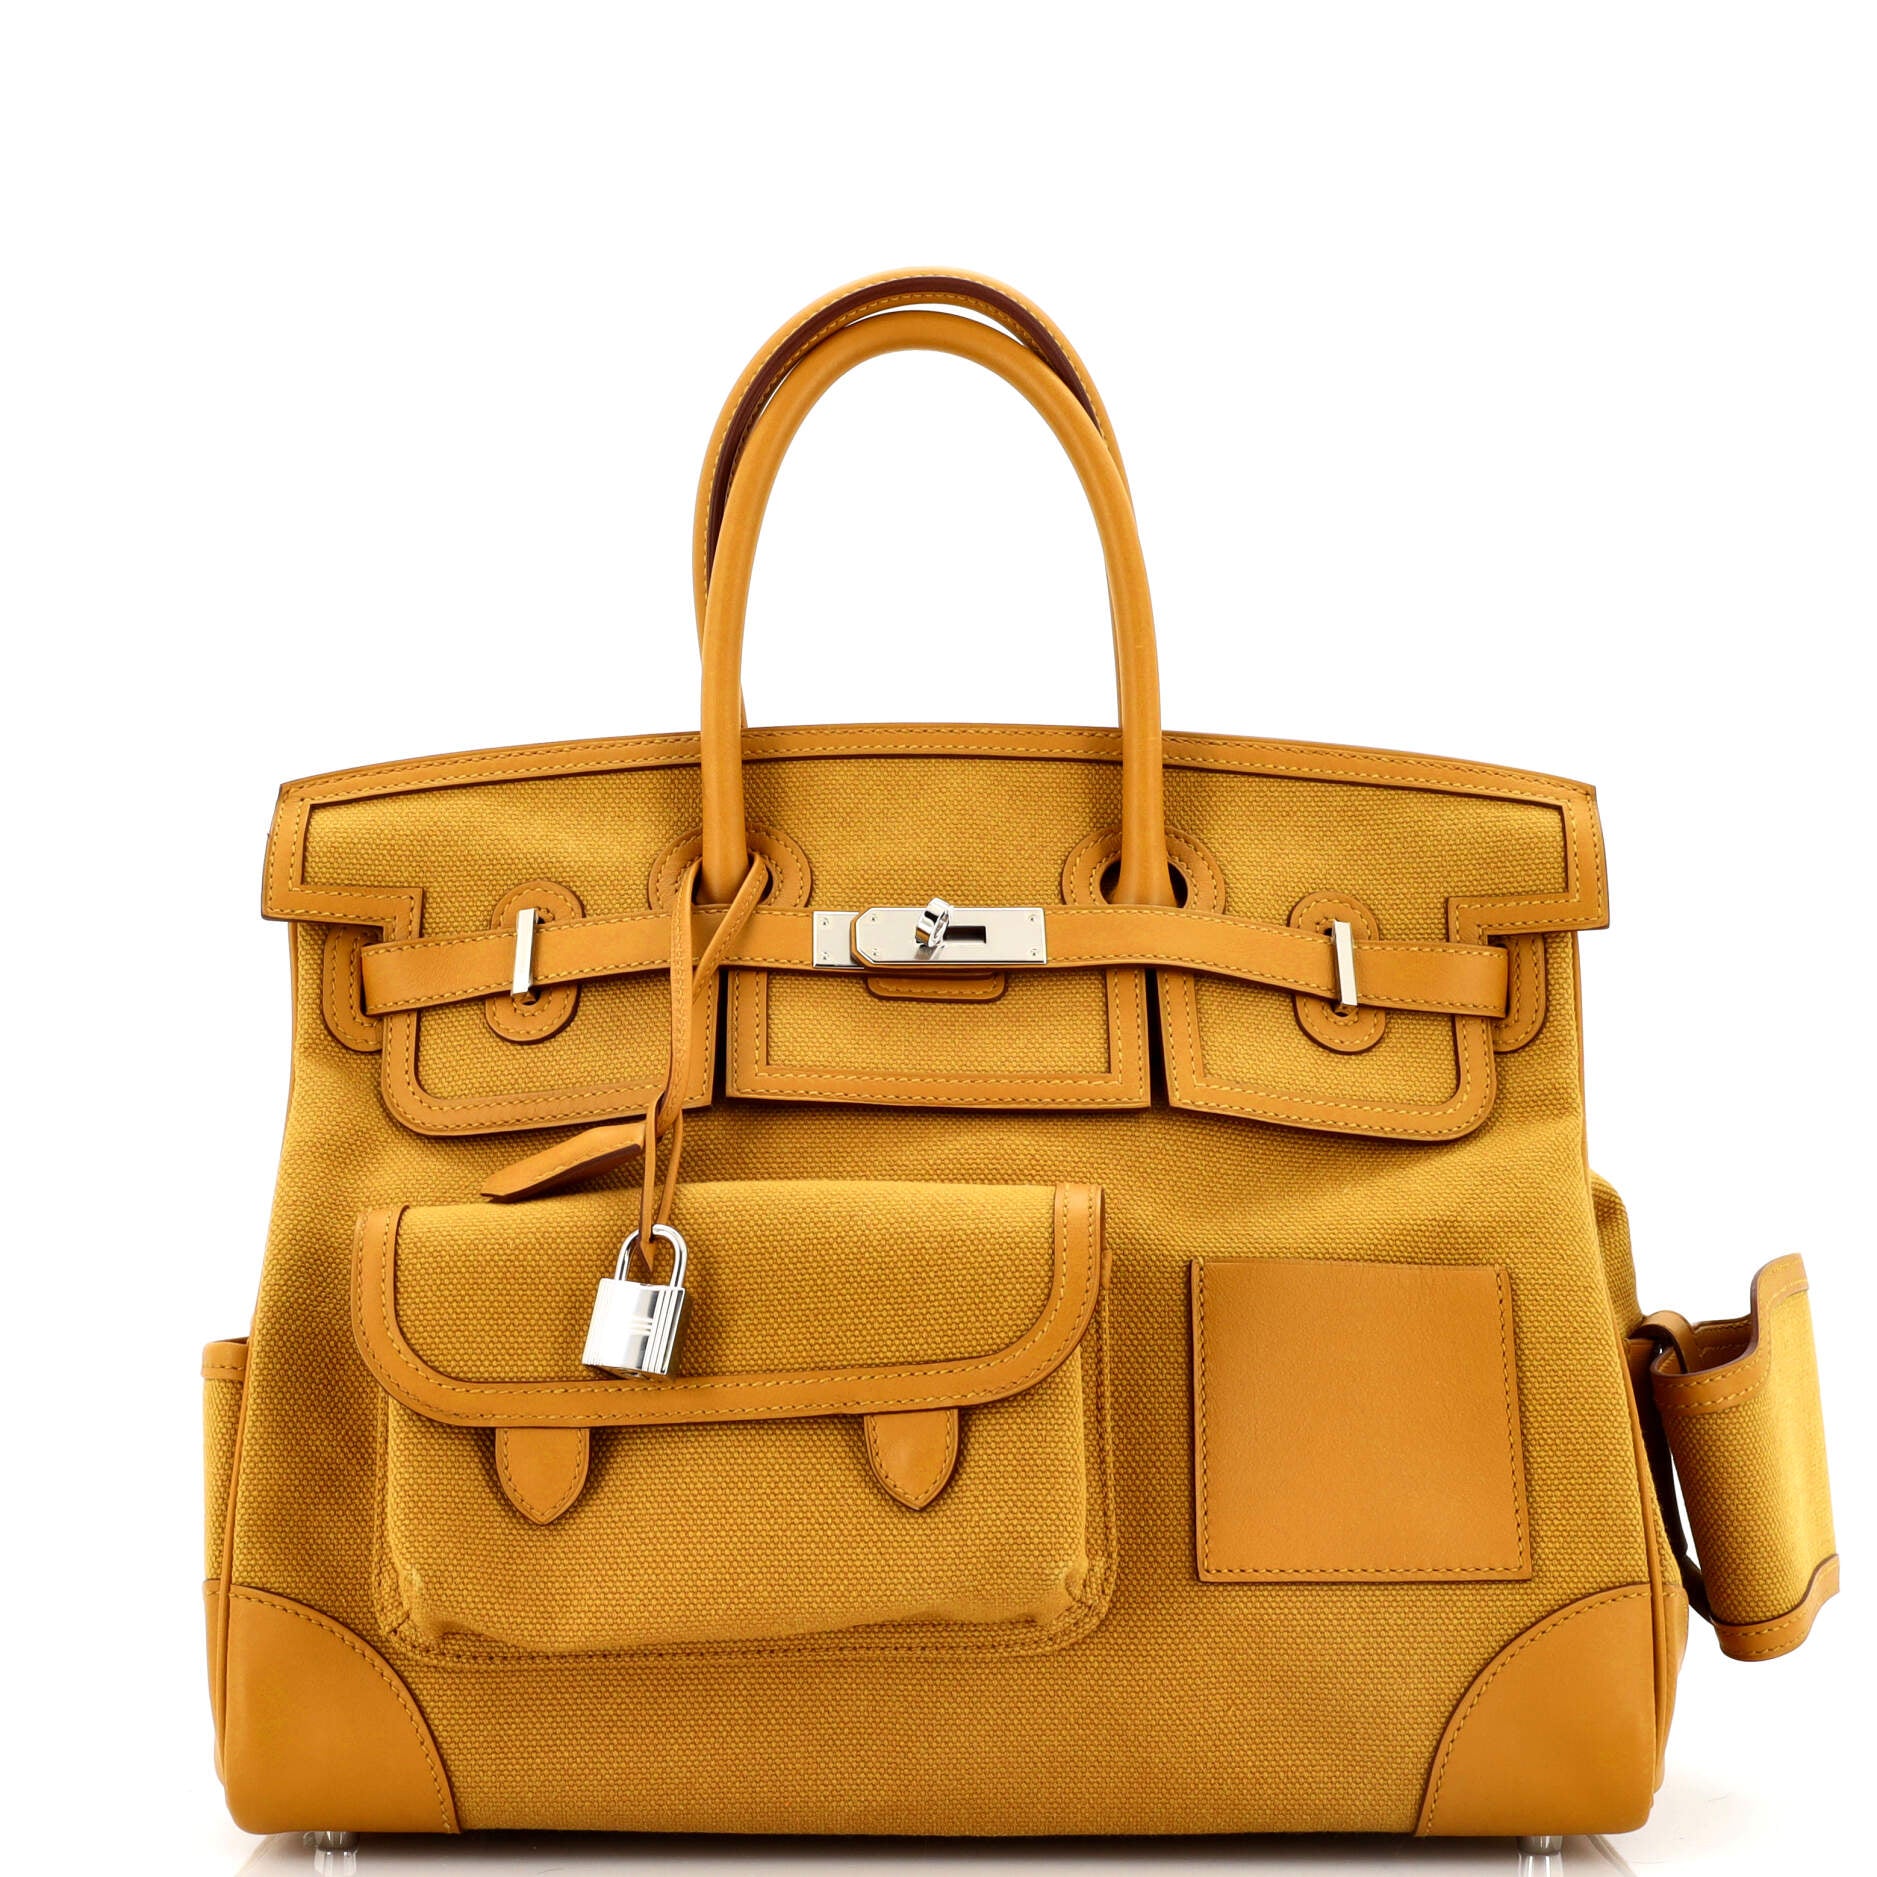 Hermes Birkin Handbag Chocolate Chevre de Coromandel with Gold